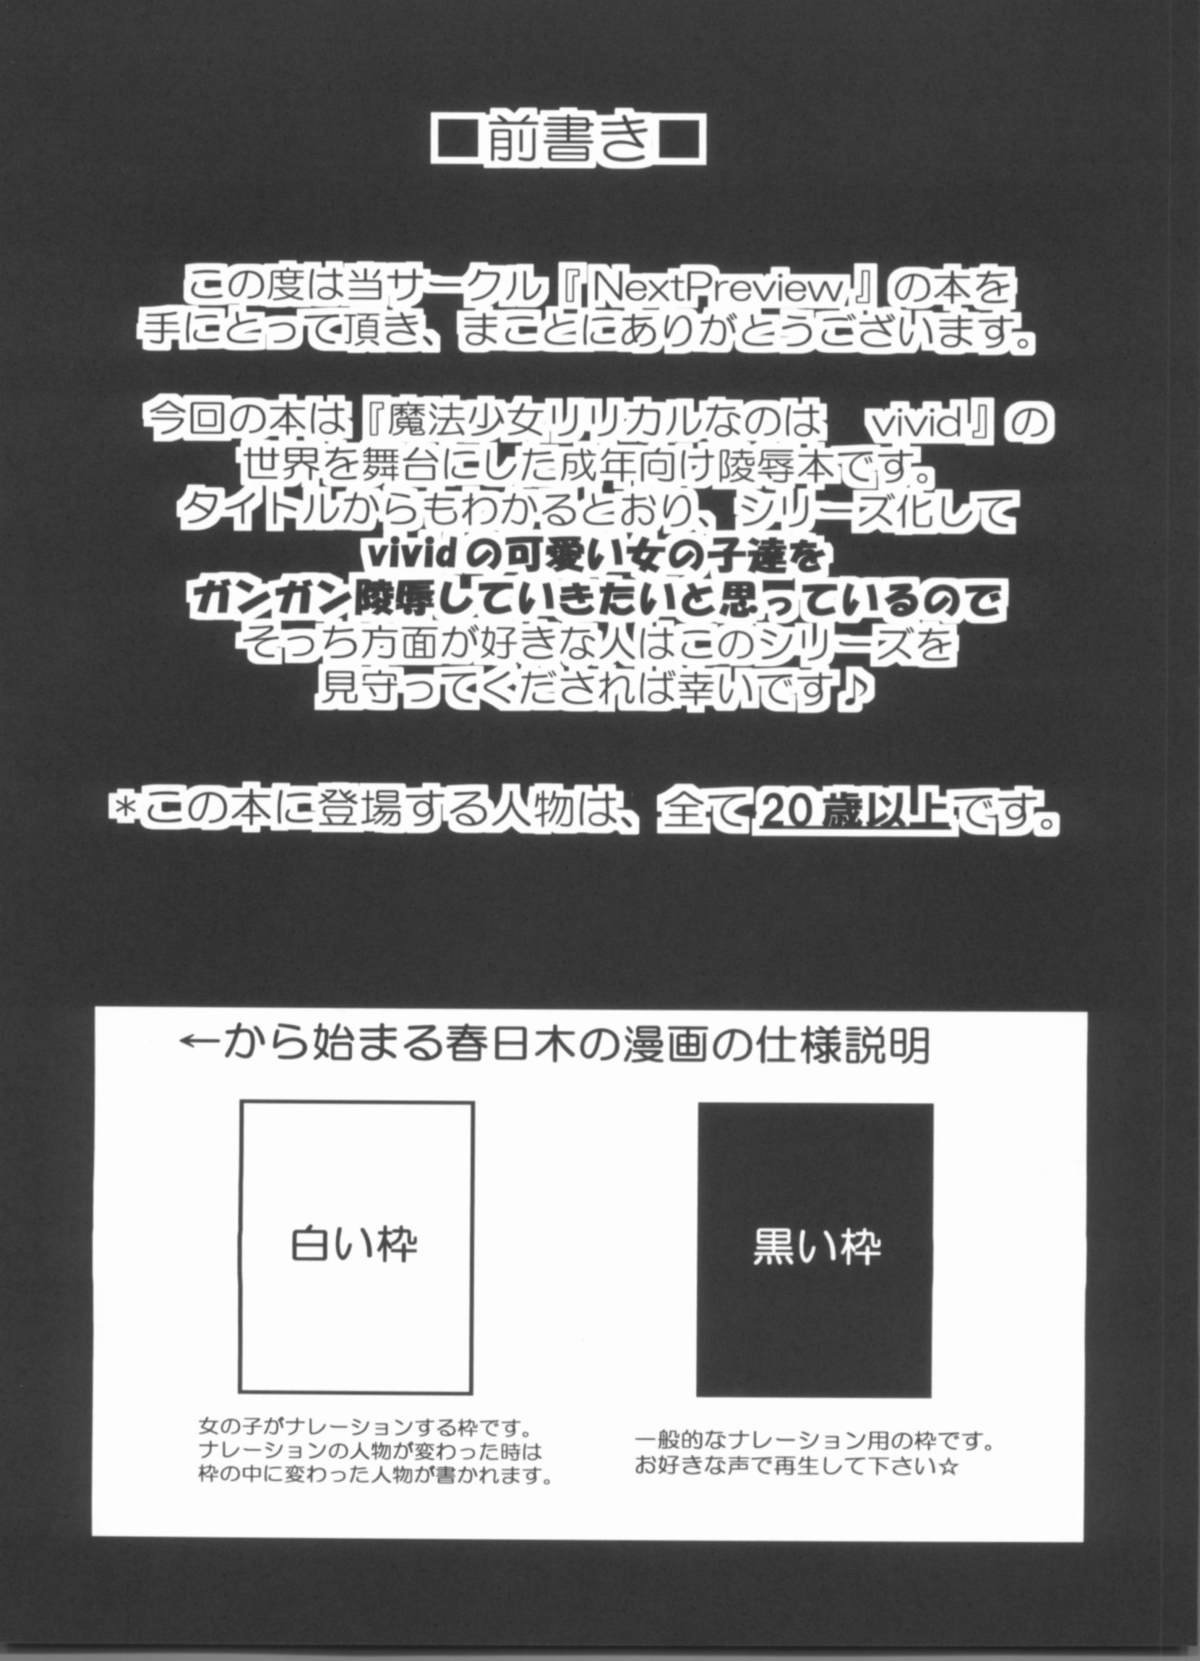 (C81) [NextPreview (MIA, 春日木雅人)] X Report-Ep1.覚醒 (魔法少女リリカルなのは)